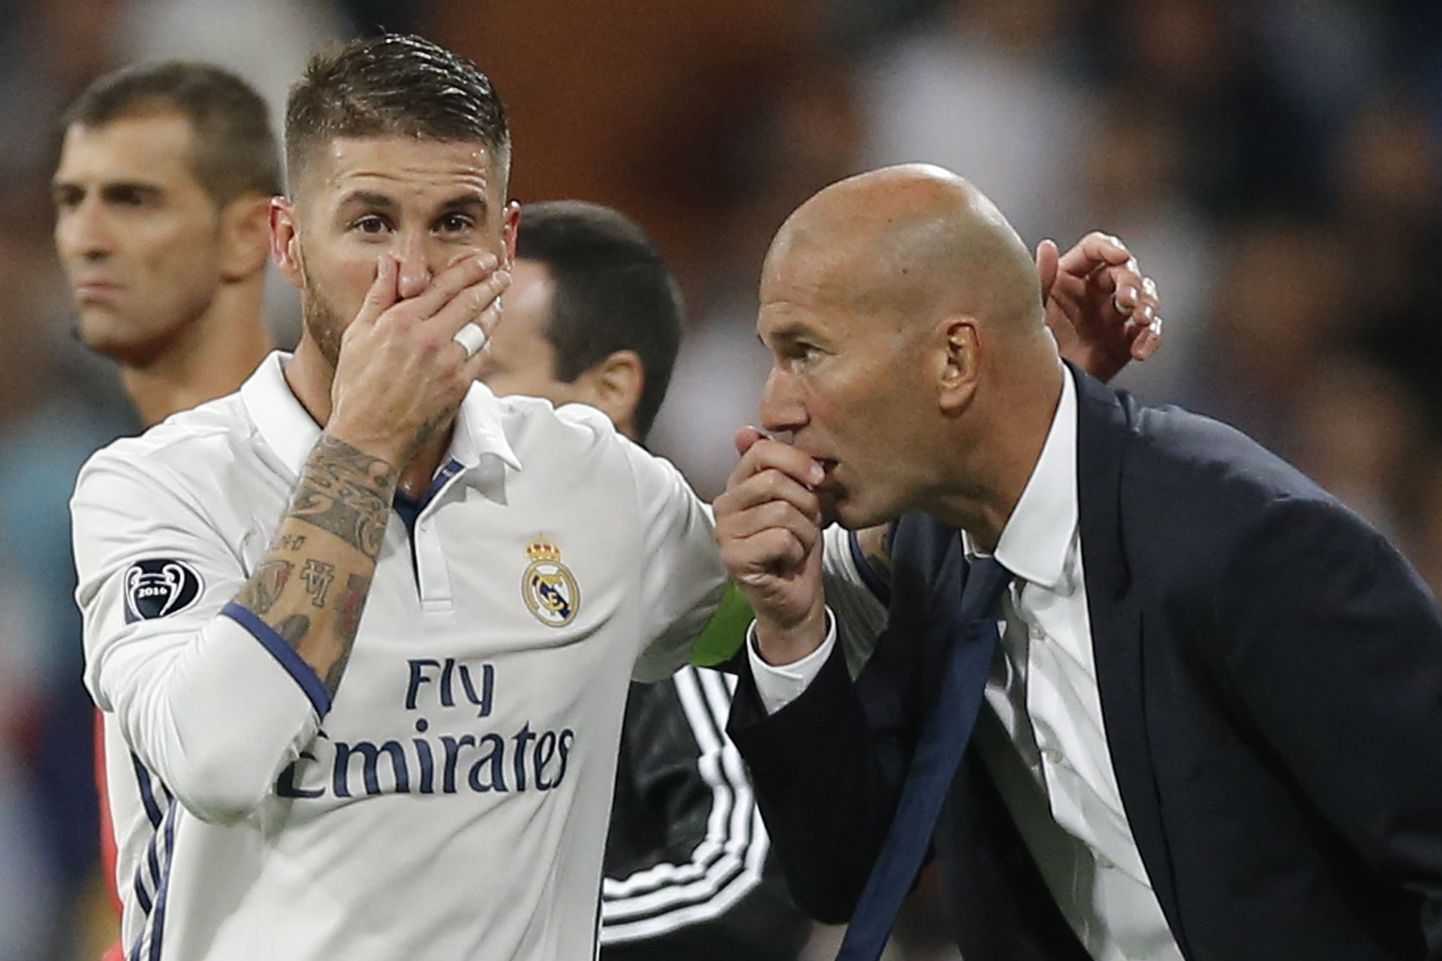 Madridi Reali kapten Sergio Ramos ja peatreener Zinedine Zidane sõjanõu pidamas. Senine hooaeg on olnud väga edukas.